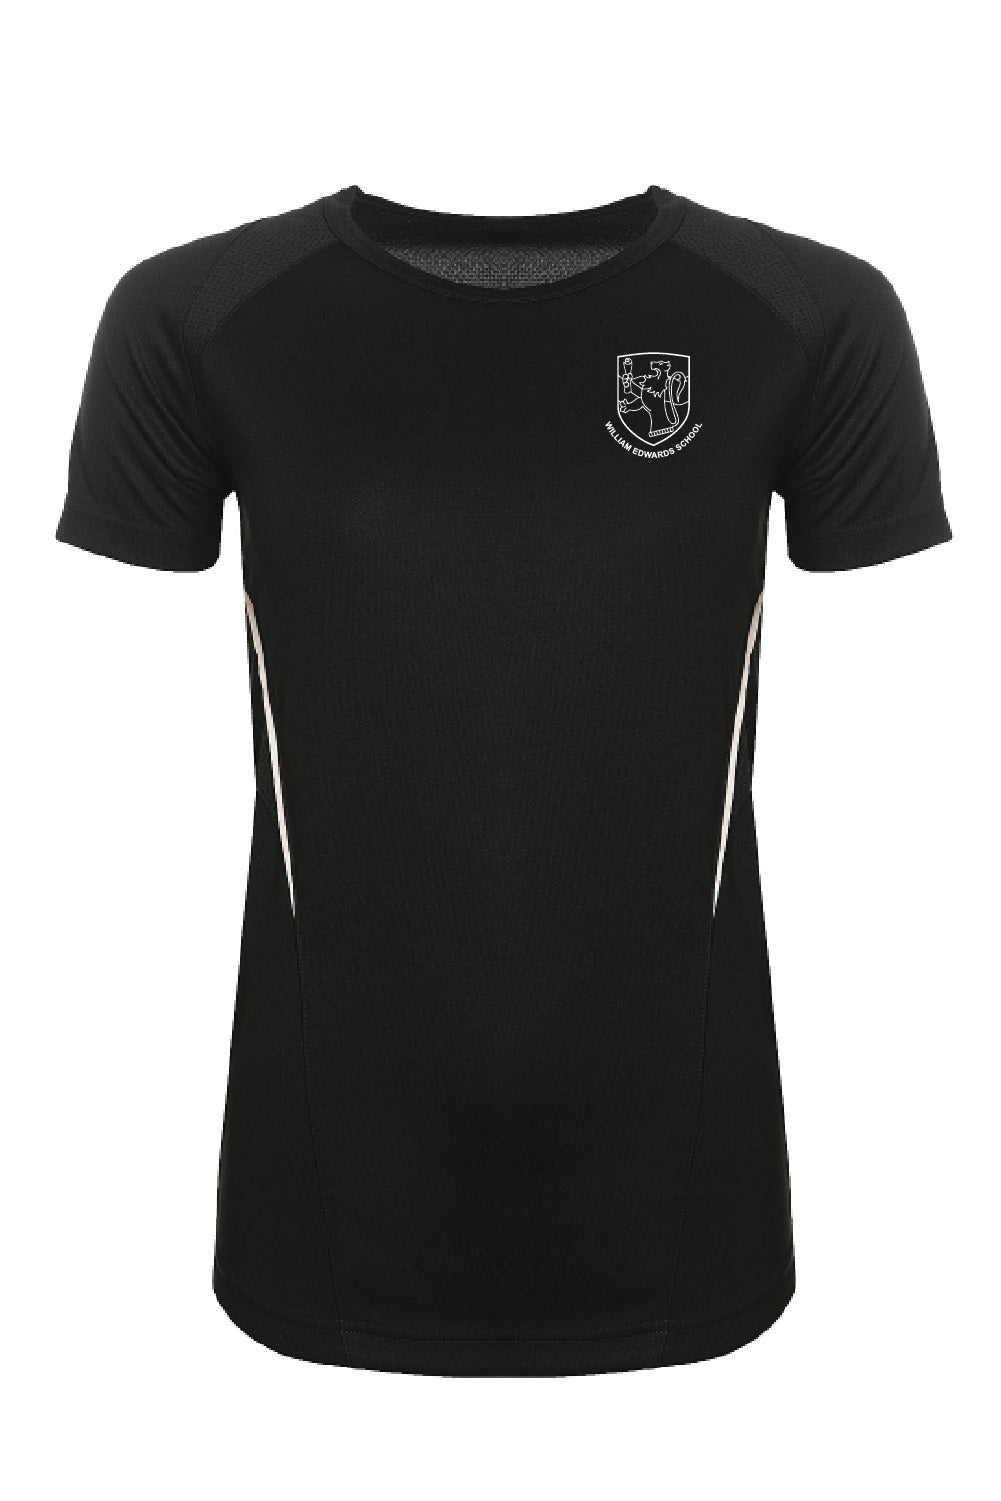 William Edwards School GCSE Dance T-shirt - Uniformwise Schoolwear